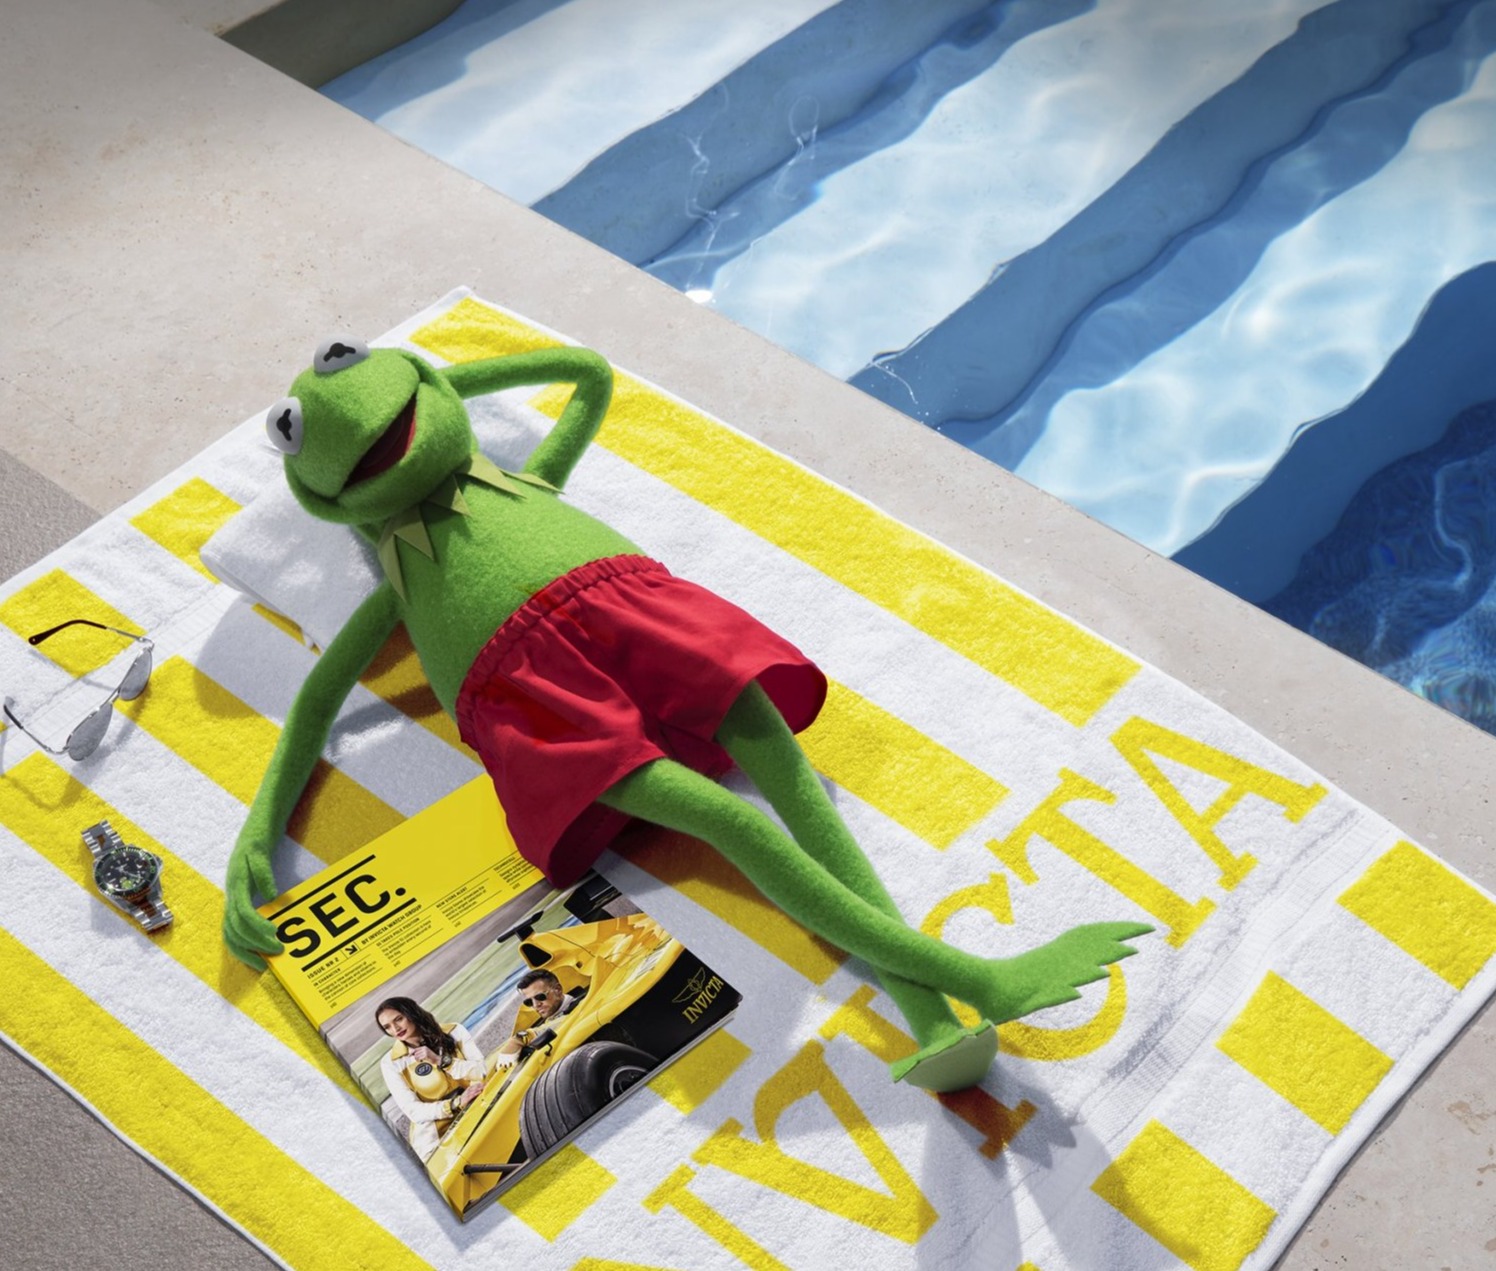 Campagnebeeld Invicta met Kermit de Kikker